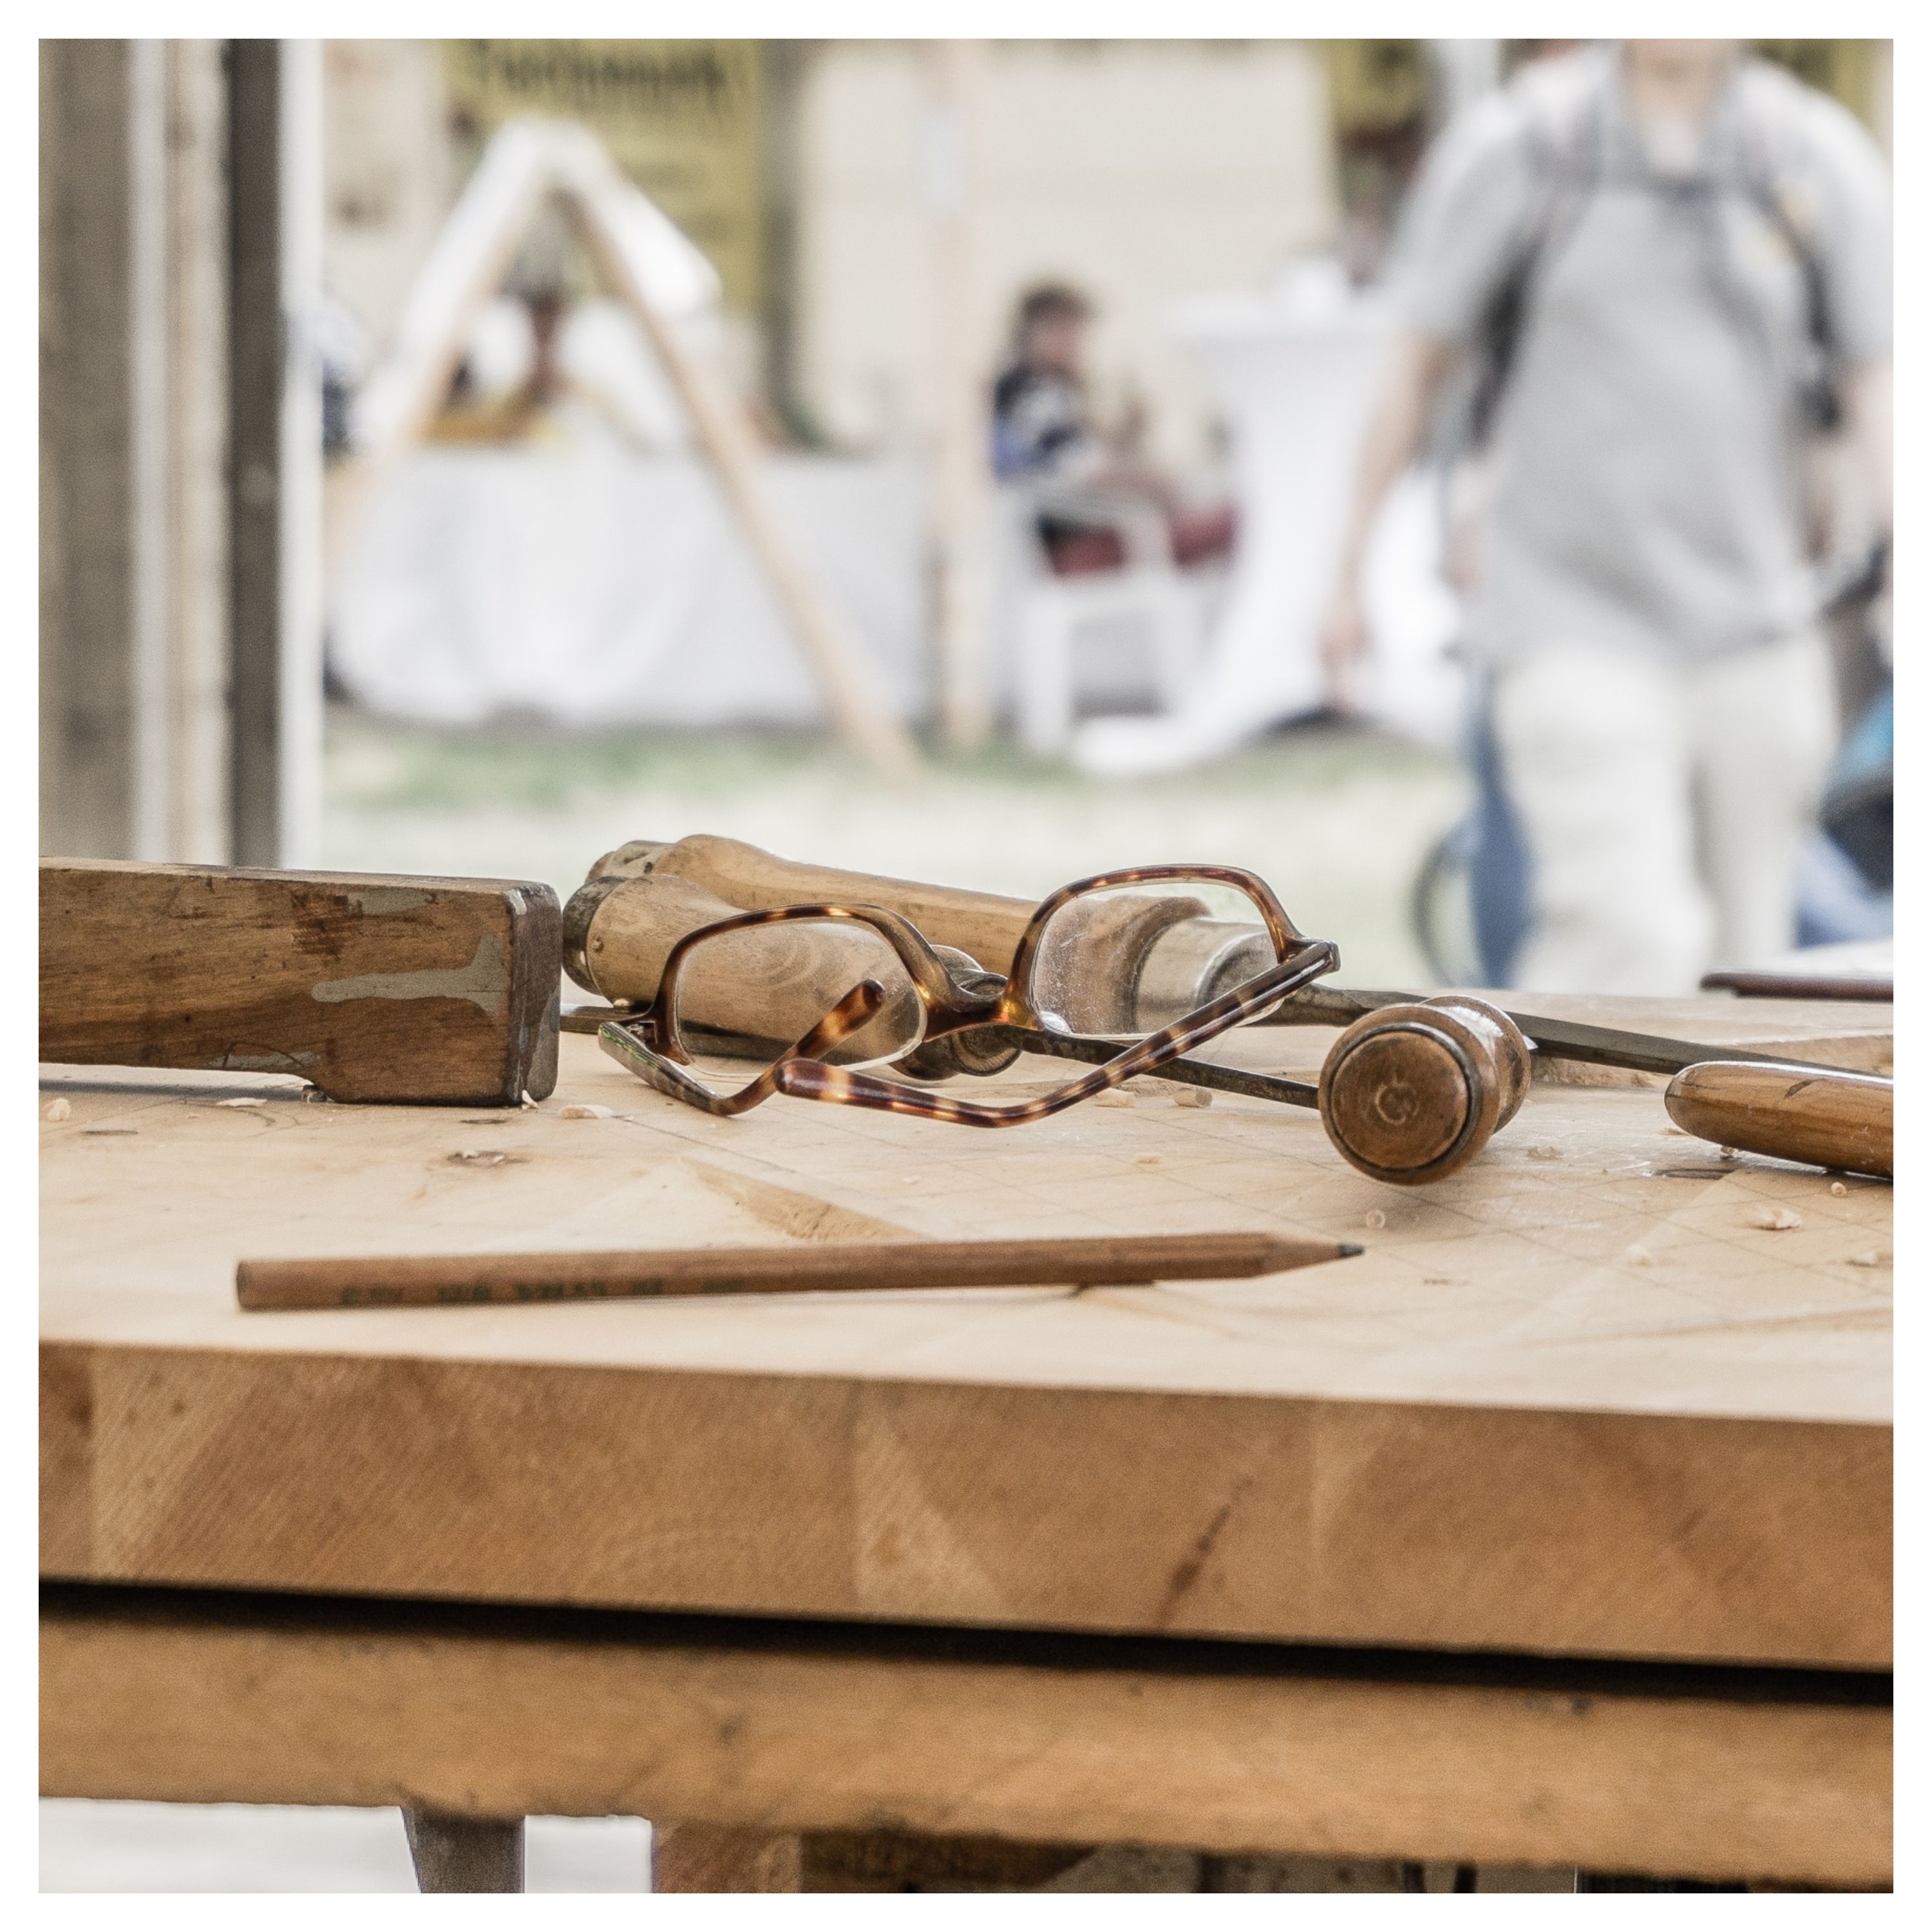 Sur un établi en bois, on voit des outils (tourne-vis, crayon à papier) et une paire de lunettes de vue.